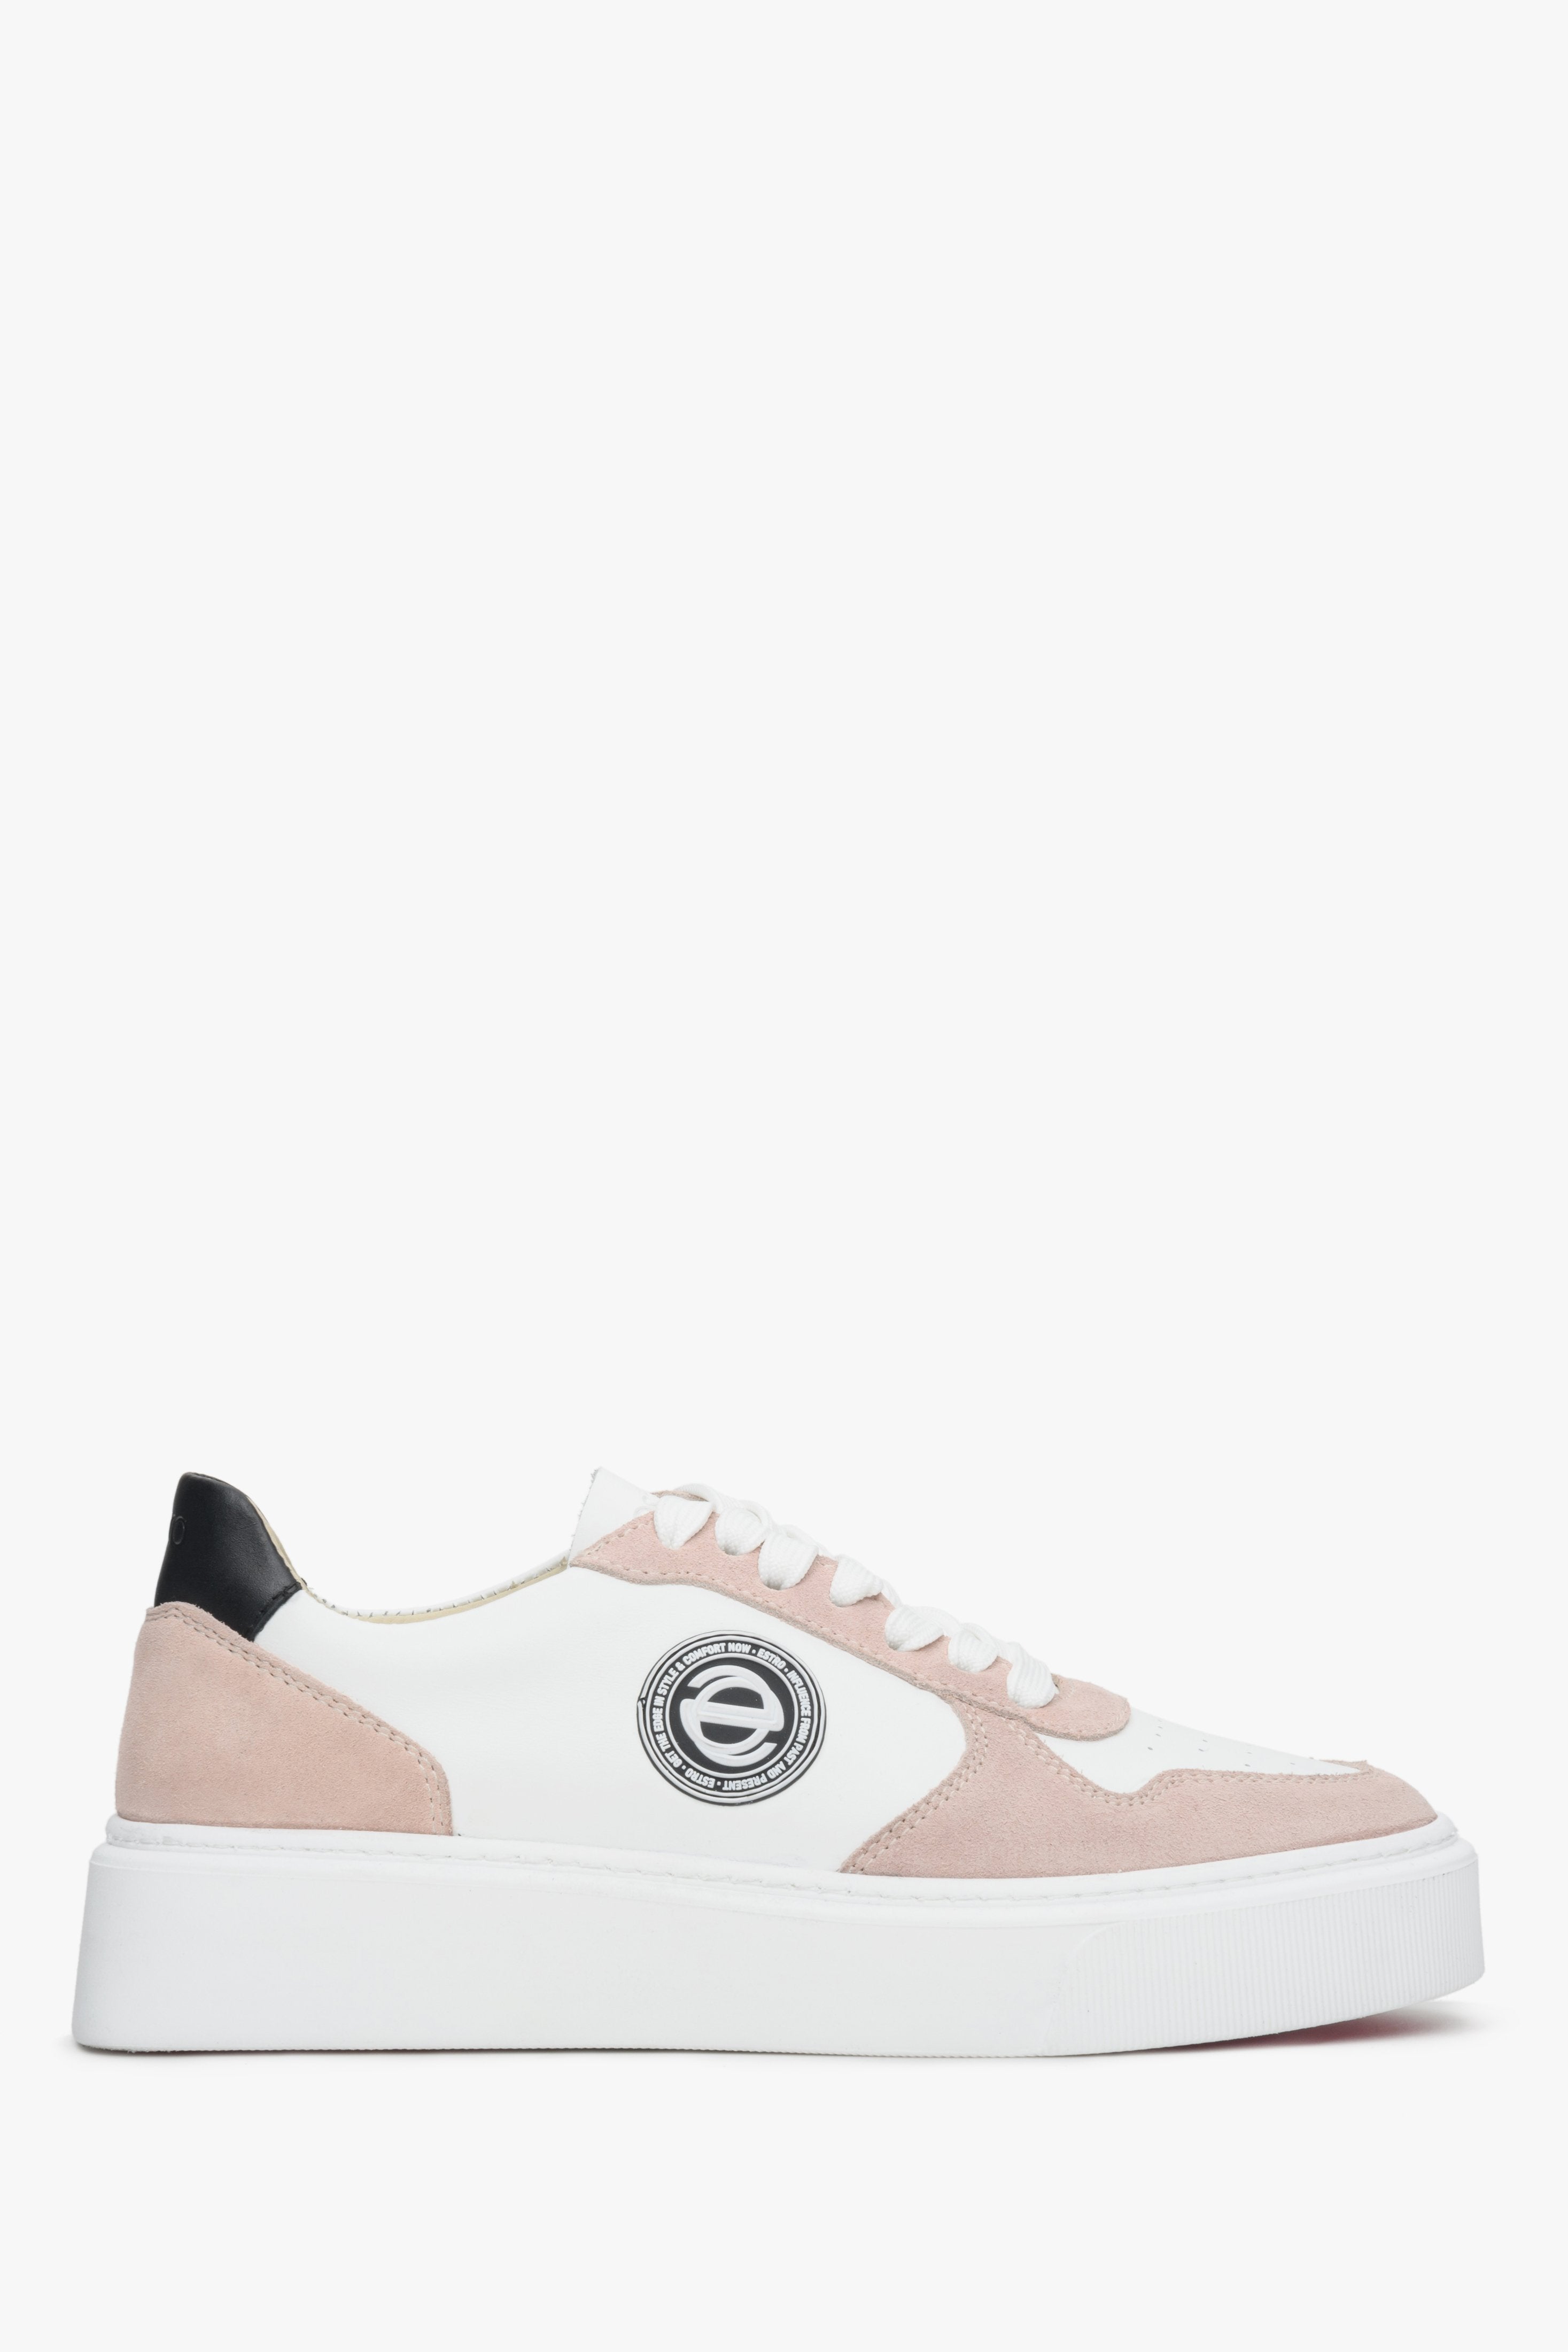 Różowo-białe sneakersy damskie ze skóry i weluru naturalnego Estro ER00113063